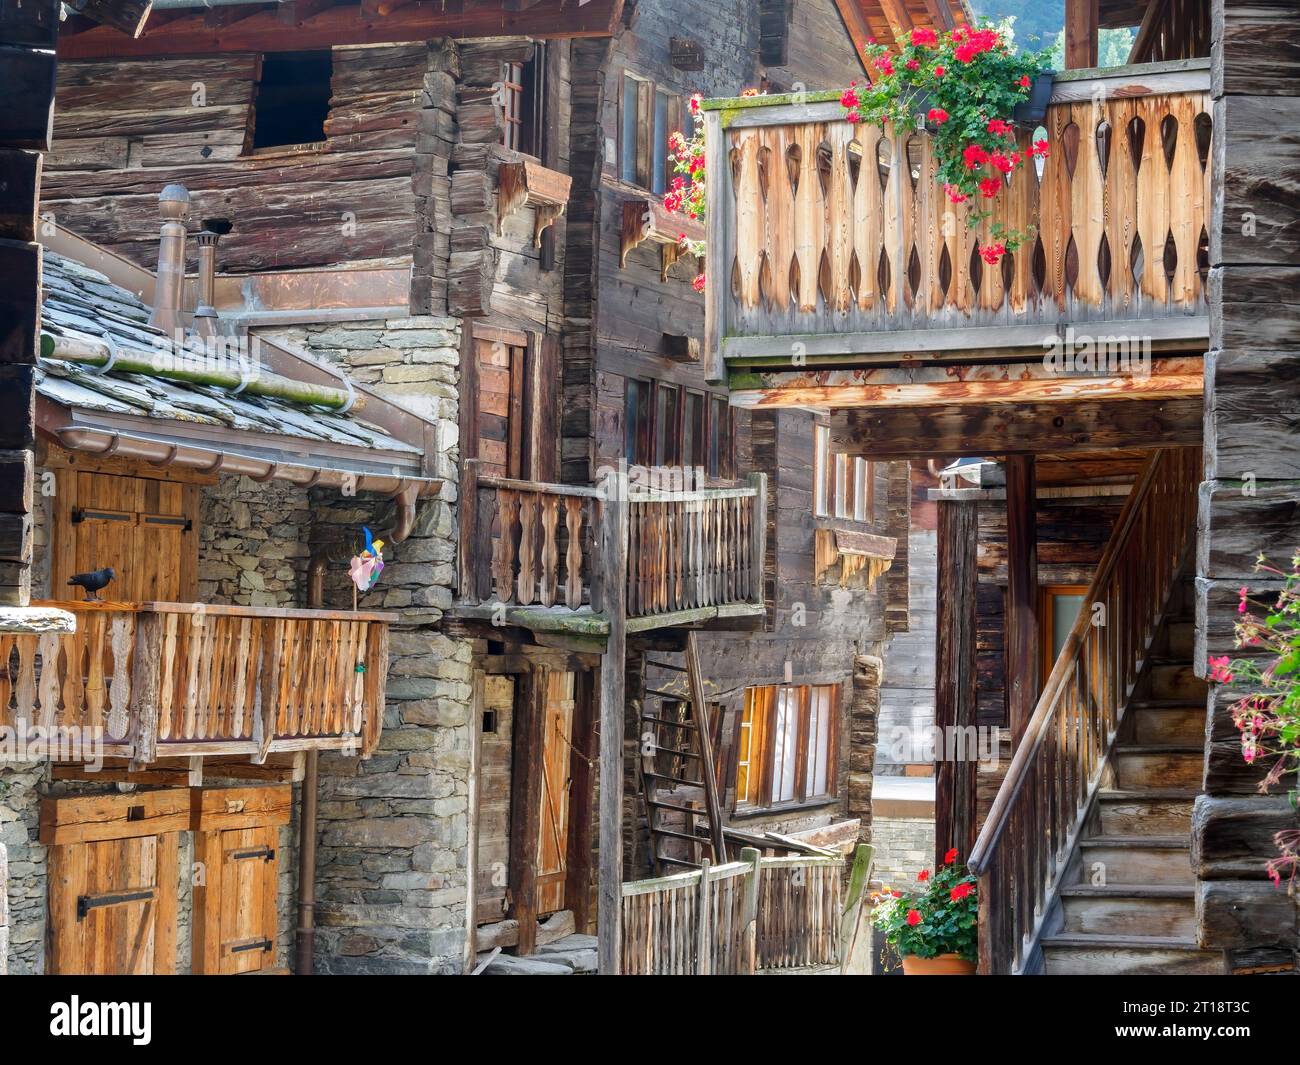 Old Village, Zermatt, Switzerland Stock Photo